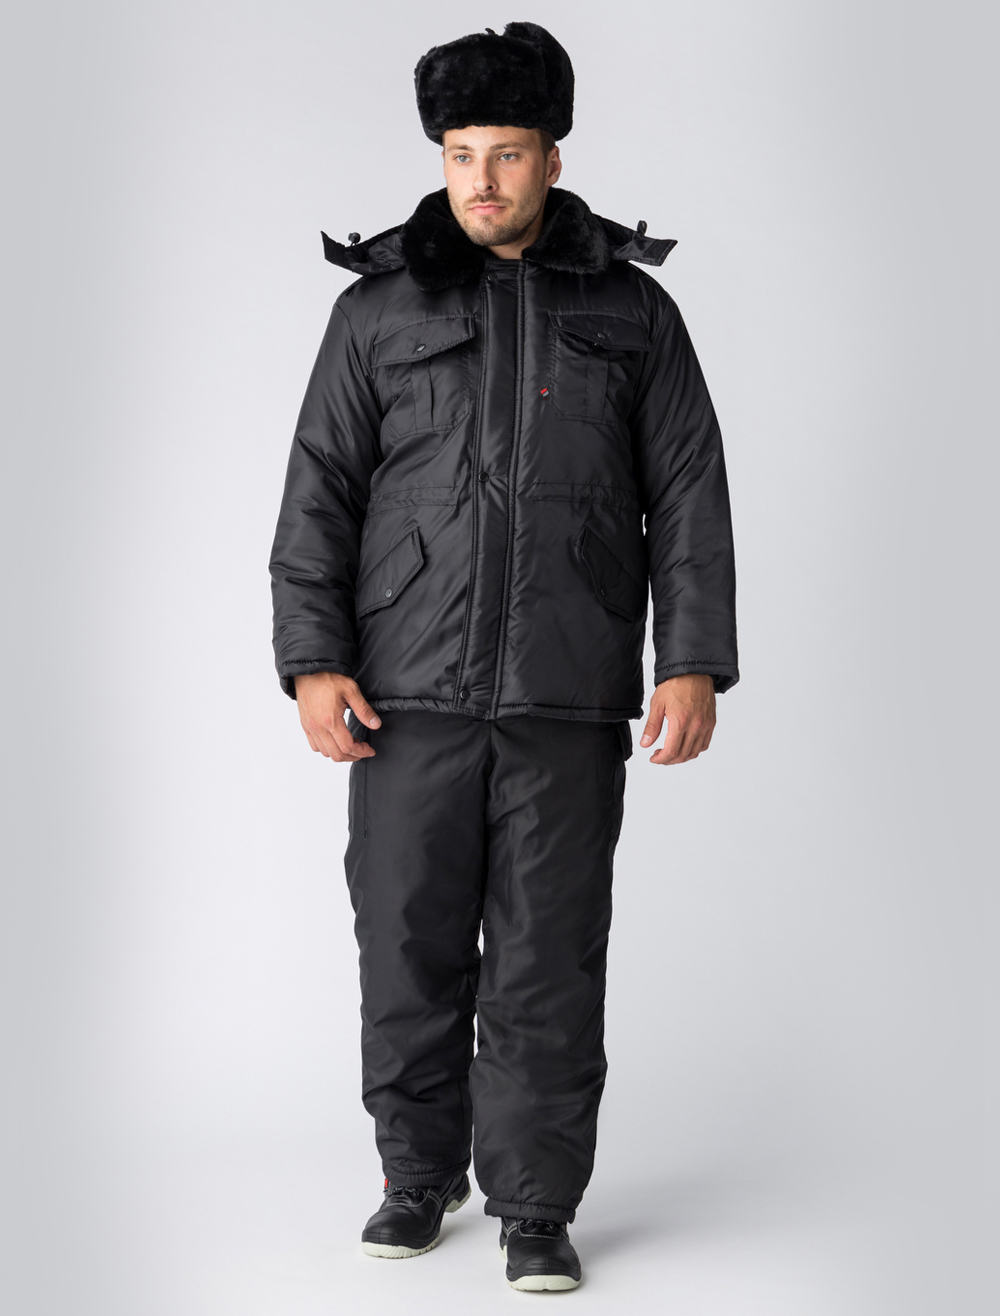 Зимняя куртка Факел для охранника, мужская, удлиненная, утепленная, цвет: черный, ткань: 100% ПЭ